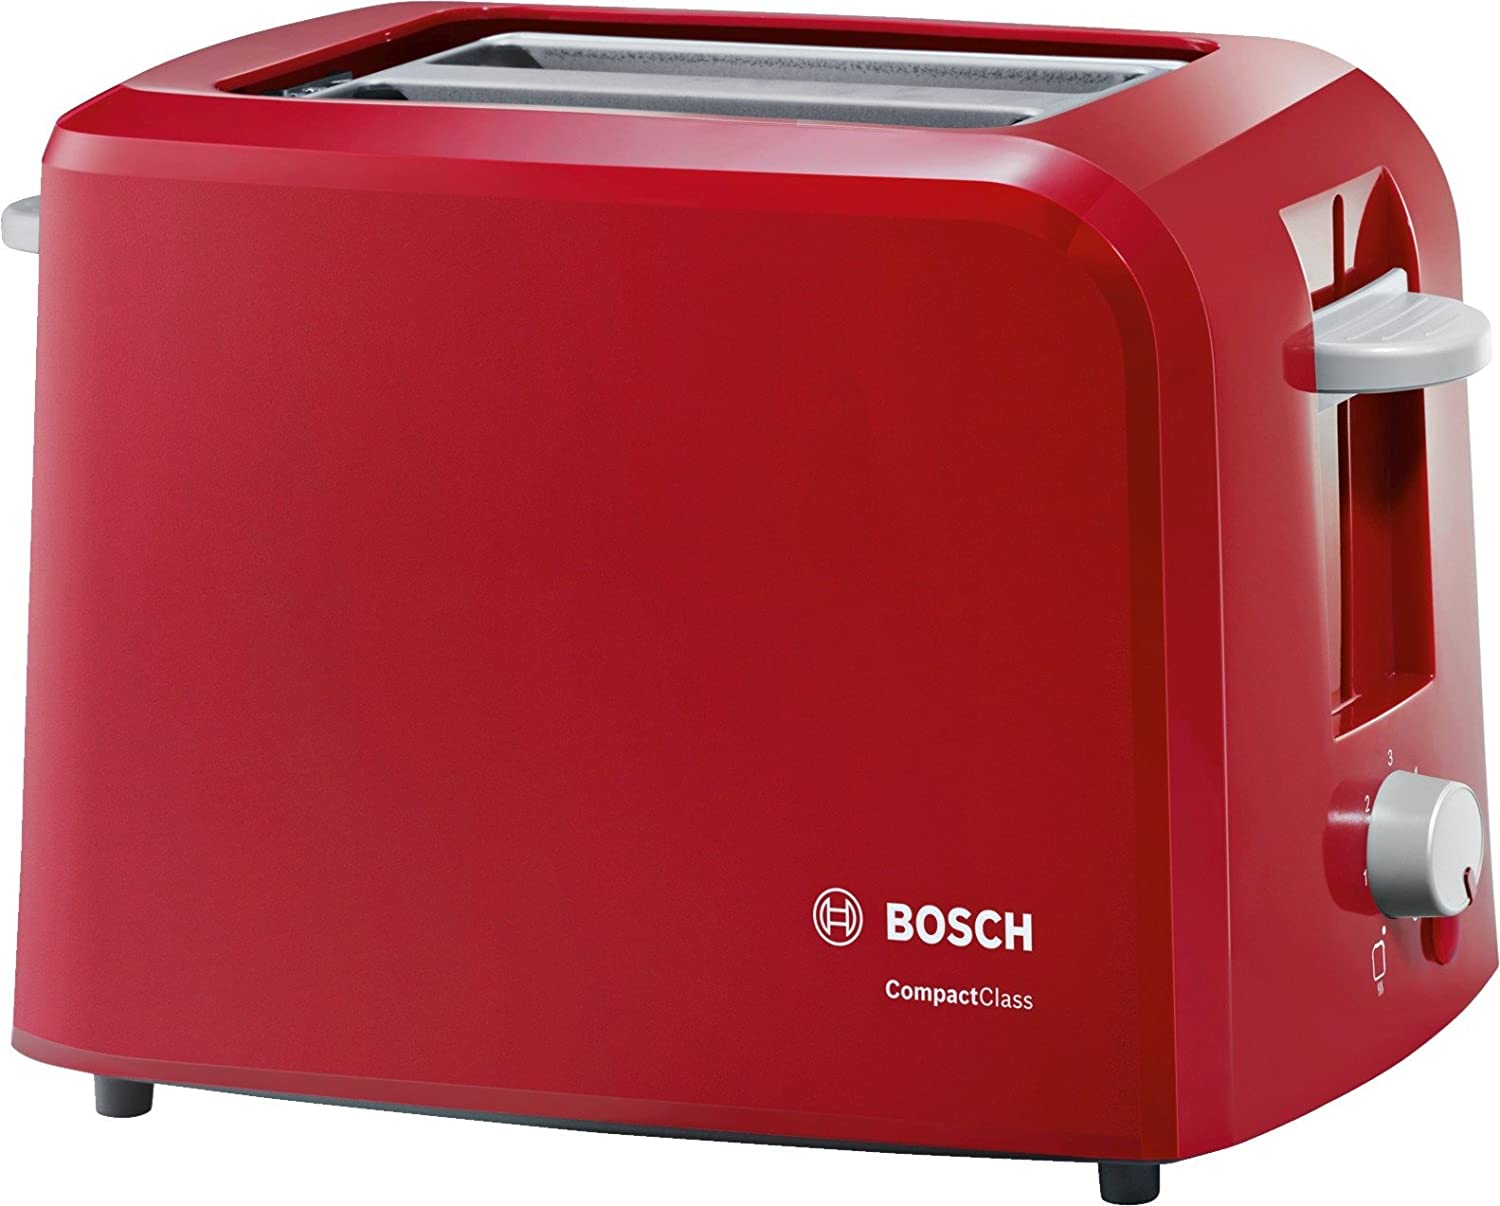 Bosch CompactClass TAT3A014 - toaster - red/light grey